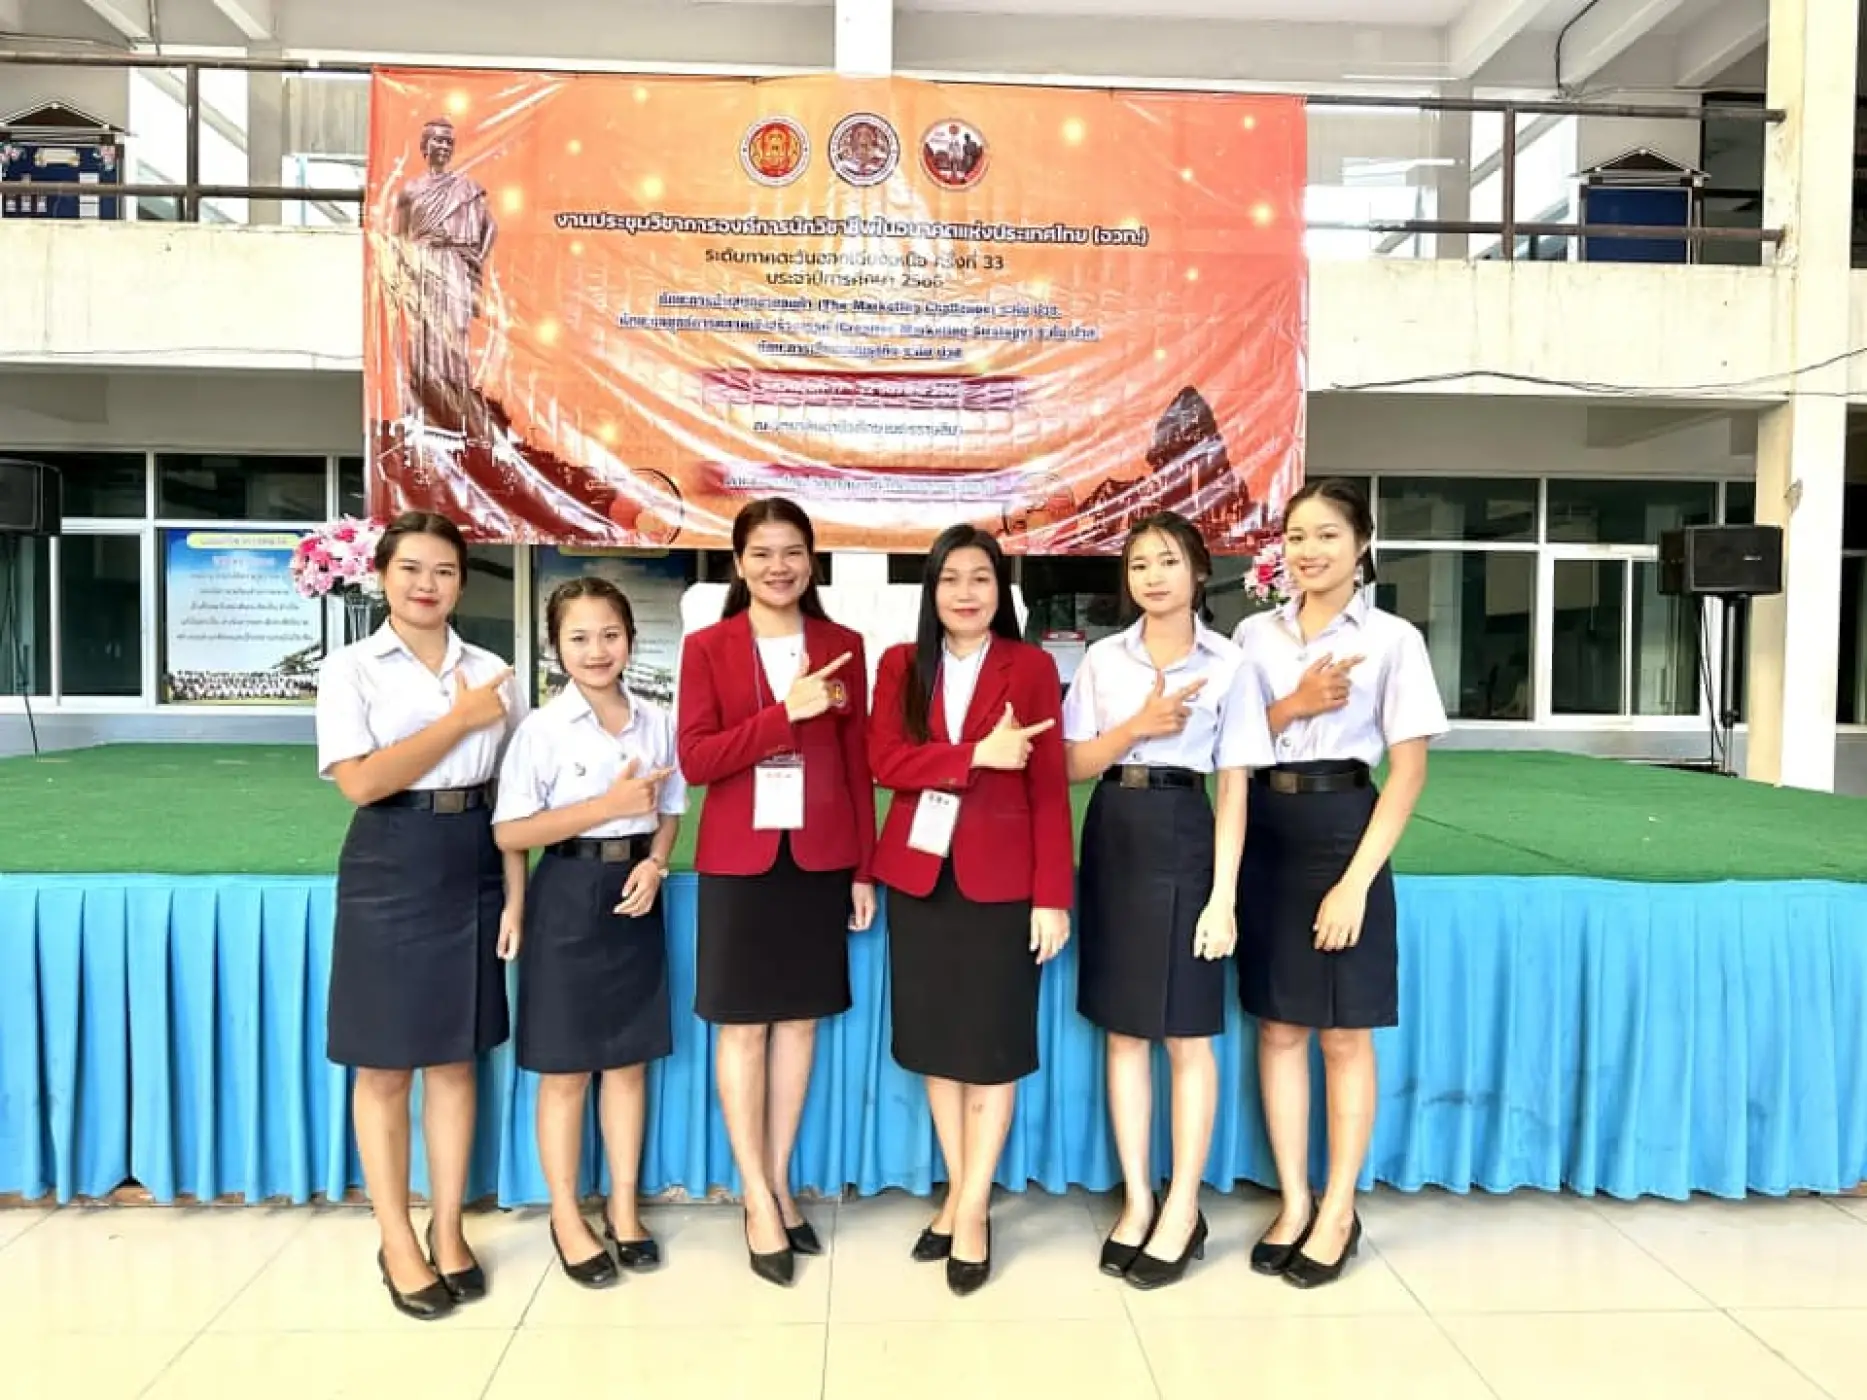 รางวัลชมเชย มาตรฐานระดับเหรียญทอง ทักษะนำเสนอขายสินค้า The Marketing Challenge  ระดับ ปวช. งานประชุมองค์การนักวิชาชีพในอนาคตแห่งประเทศไทย ครั้งที่ 33 ระดับภาคตะวันออกเฉียงเหนือ ปีการศึกษา 2566 จ.นครราชสีมา 